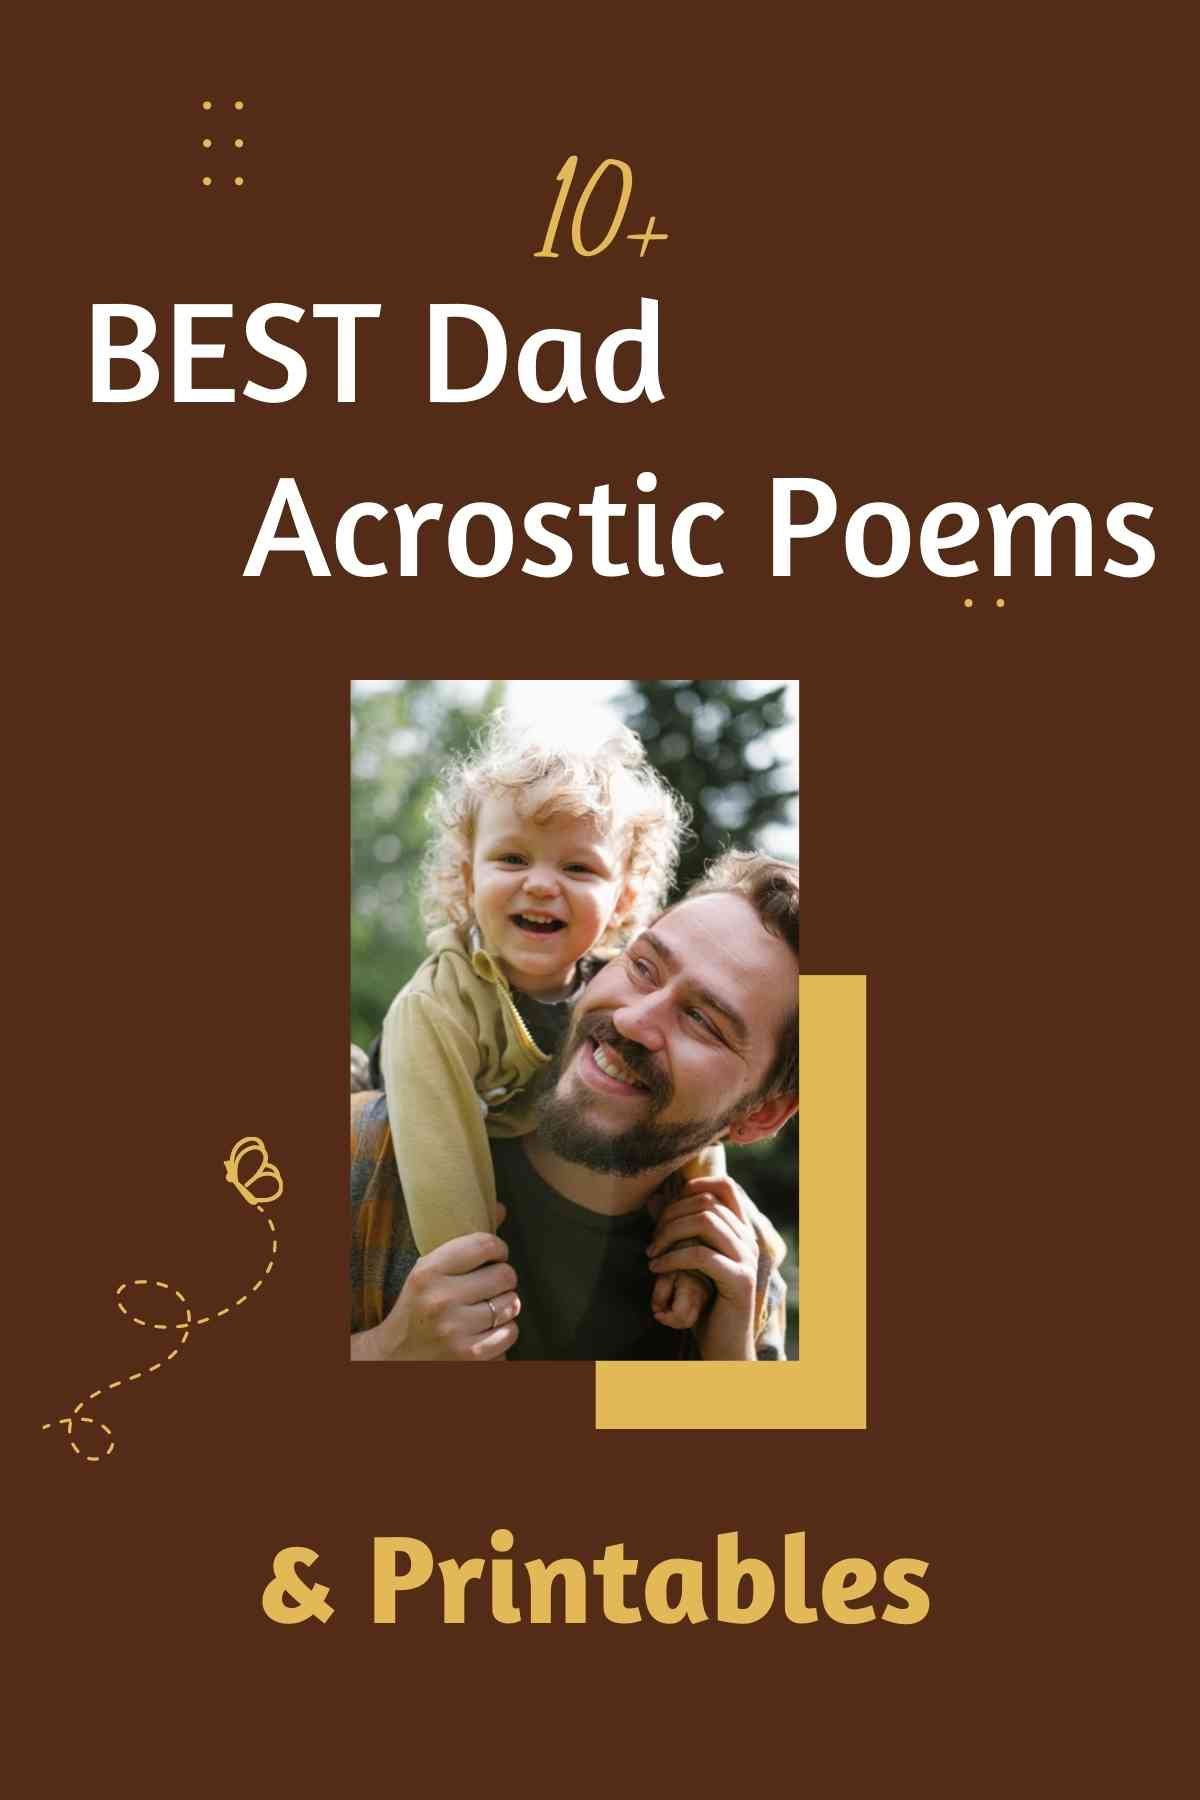 10-best-dad-acrostic-poem-printables-aestheticpoems